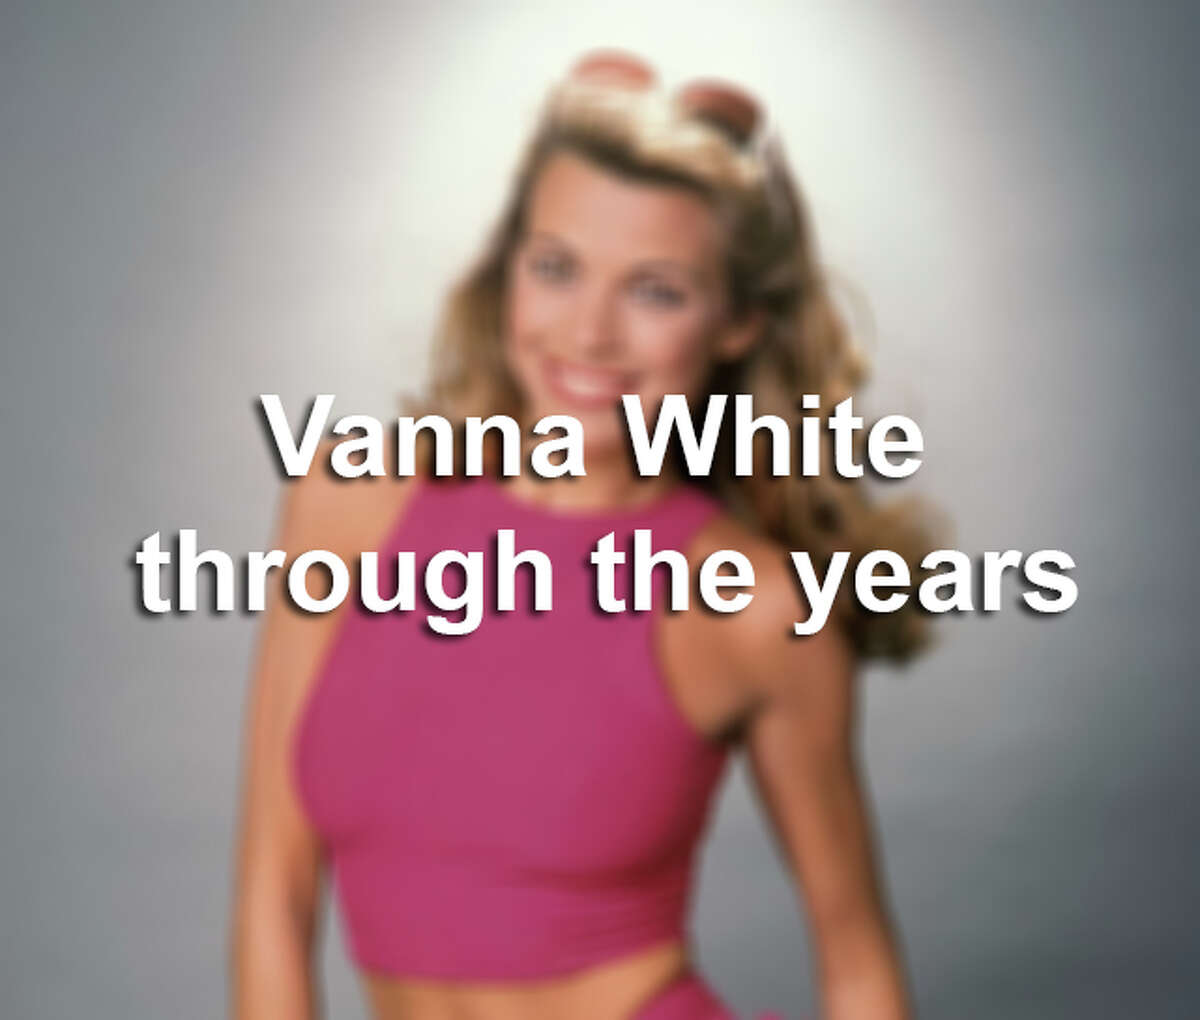 Vanna White Through The Years